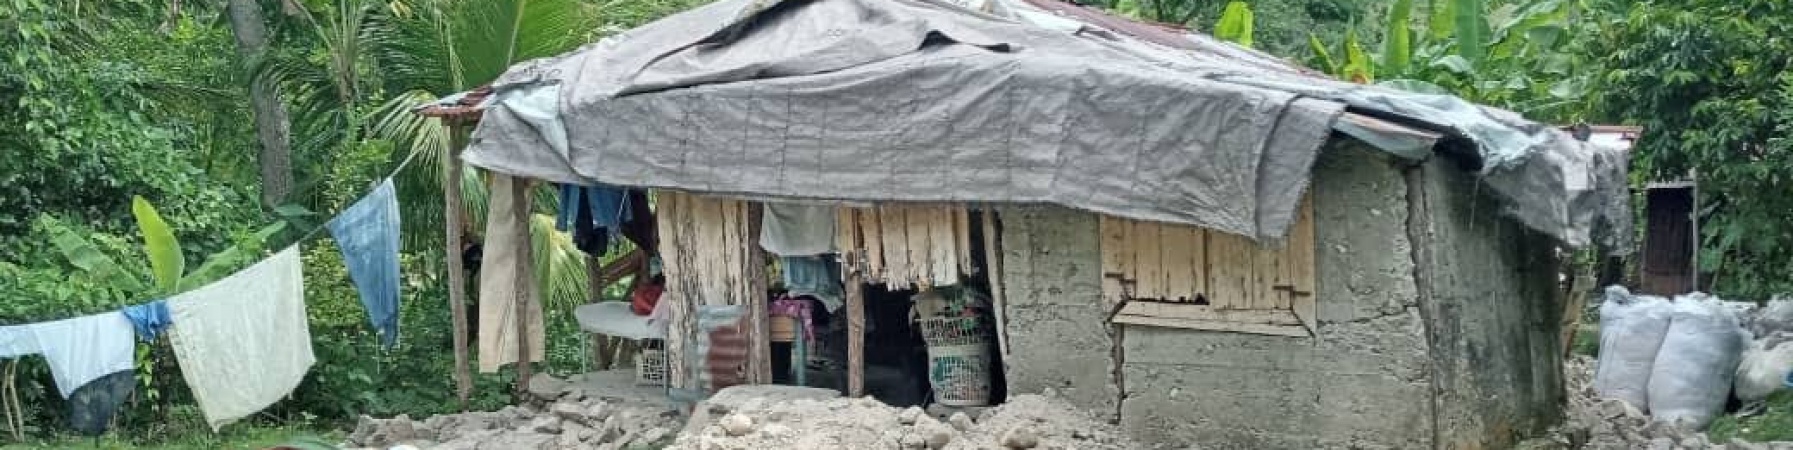 scena di una casa distrutta dal terremoto ad haiti